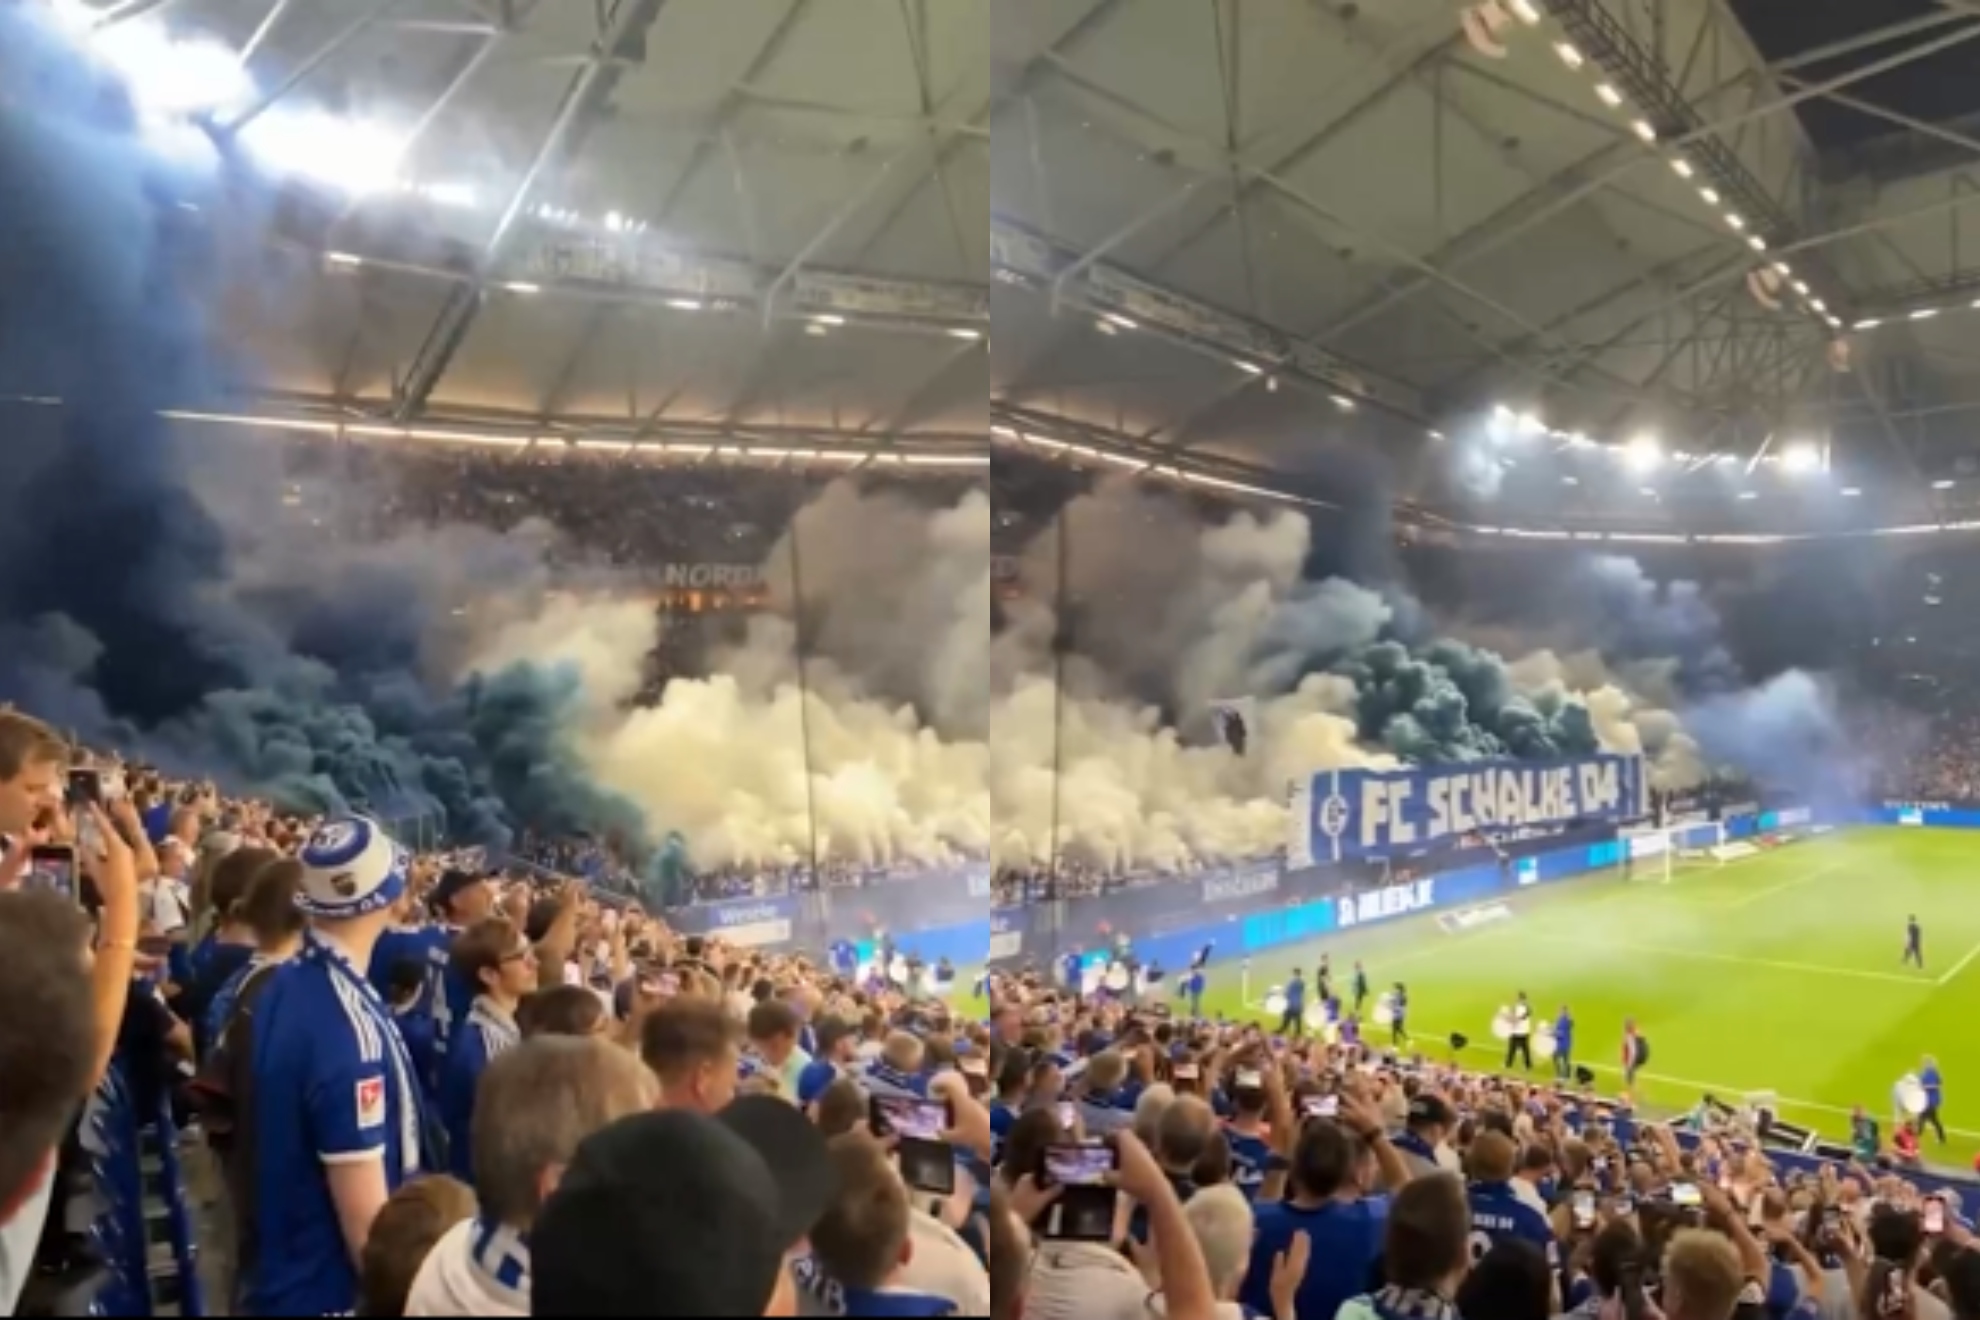 El impresionante recibimiento al Schalke, recién descendido a segunda, por su afición